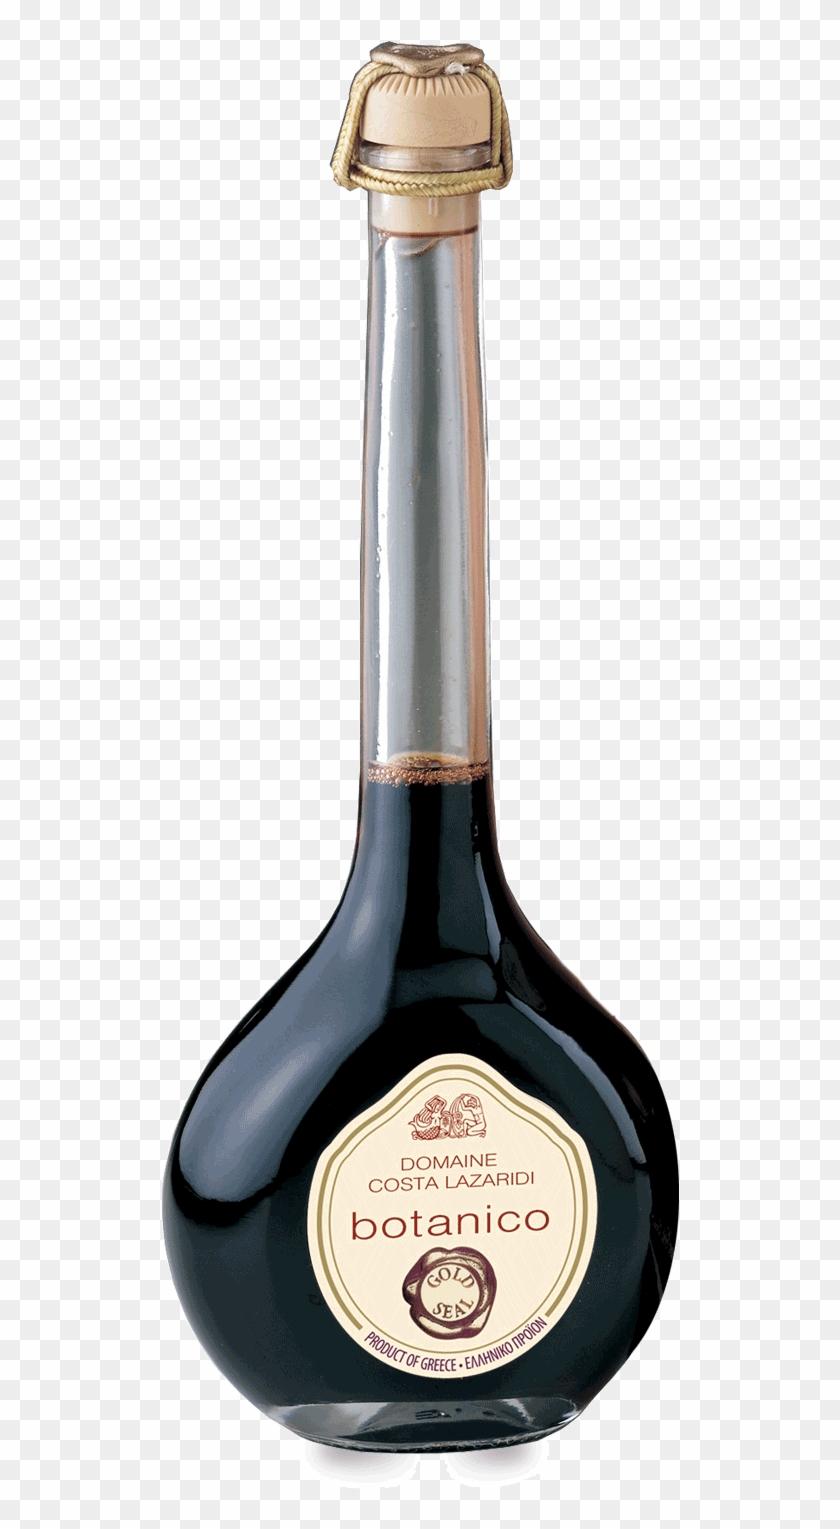 Balsamic Vinegar Clipart #1621812